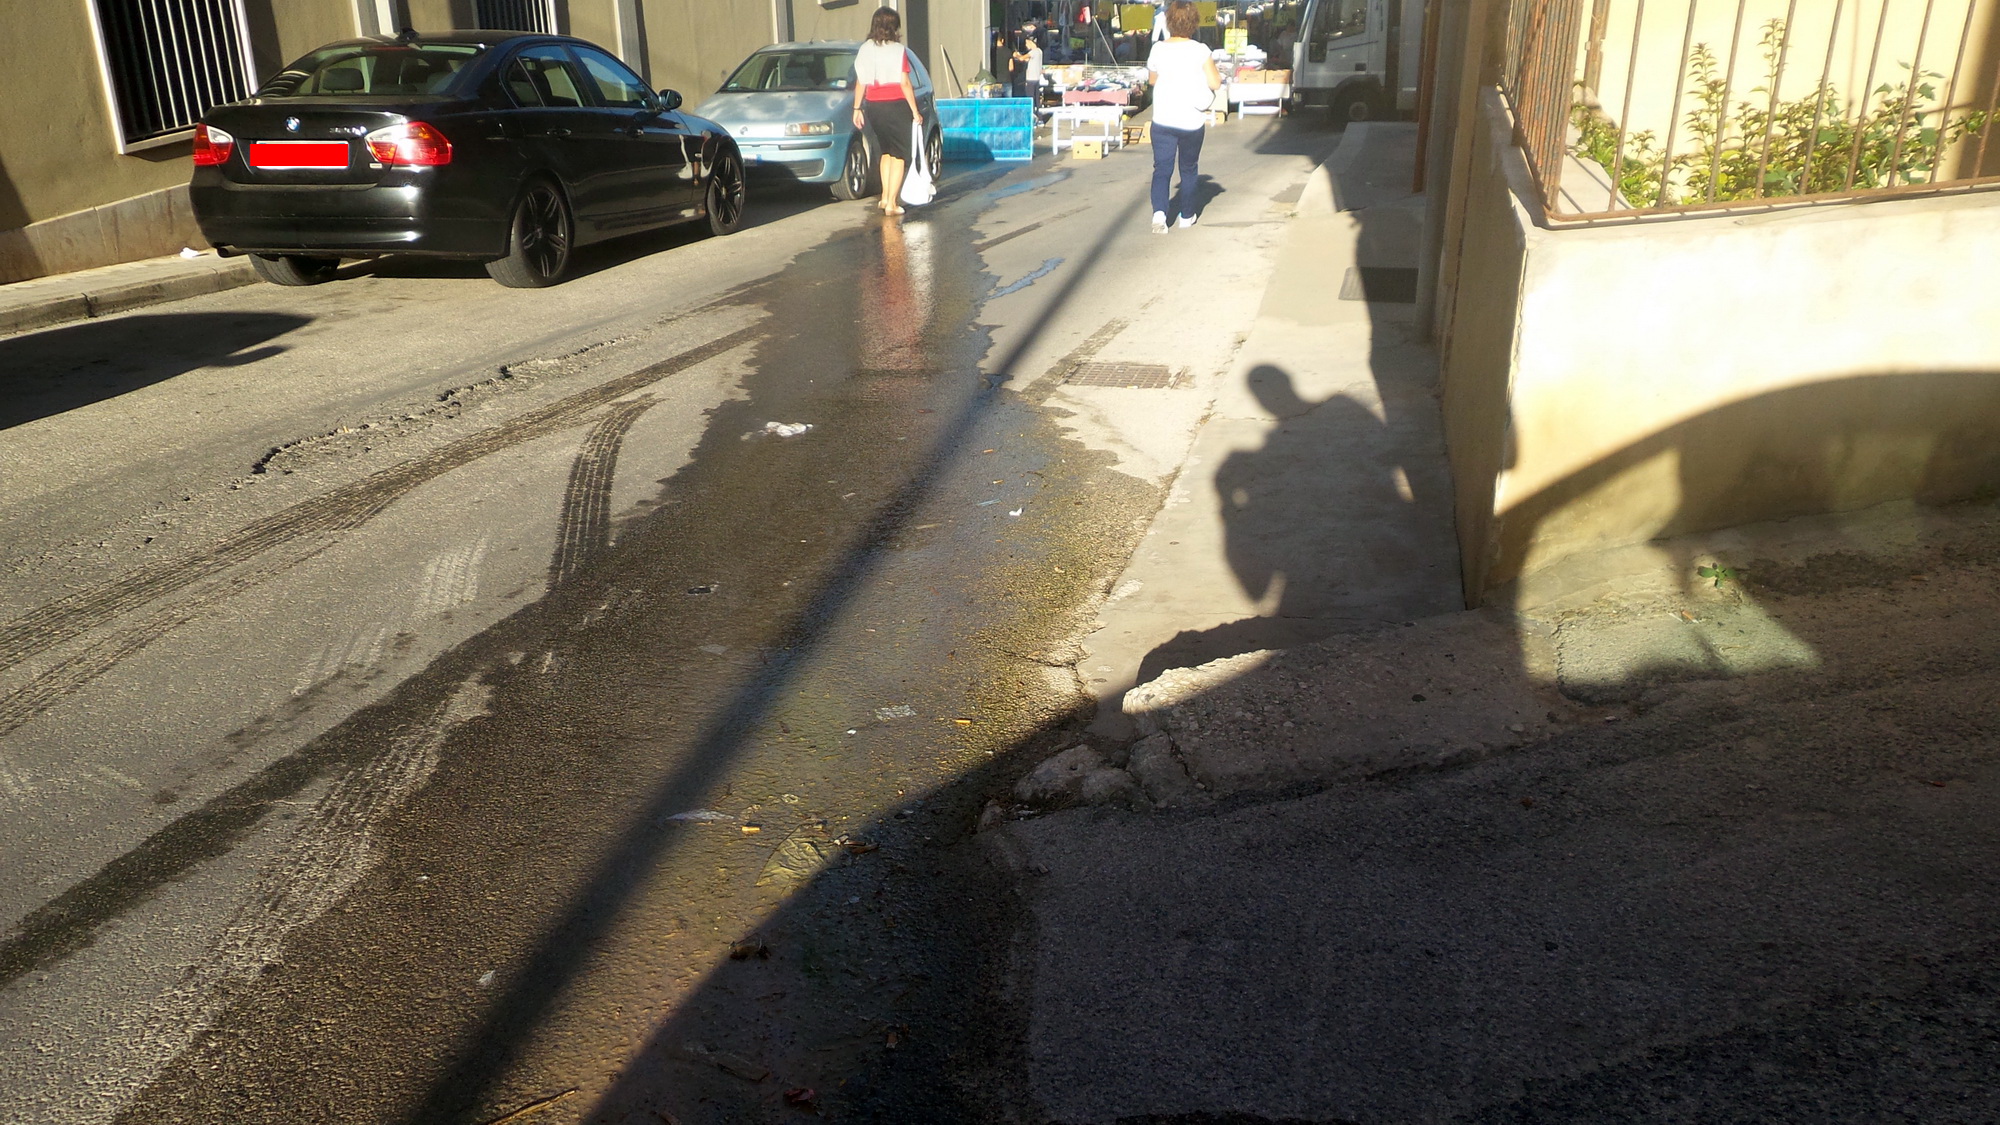  Perdita d’acqua in via Settembrini: per recarsi al mercato serve lo slalom